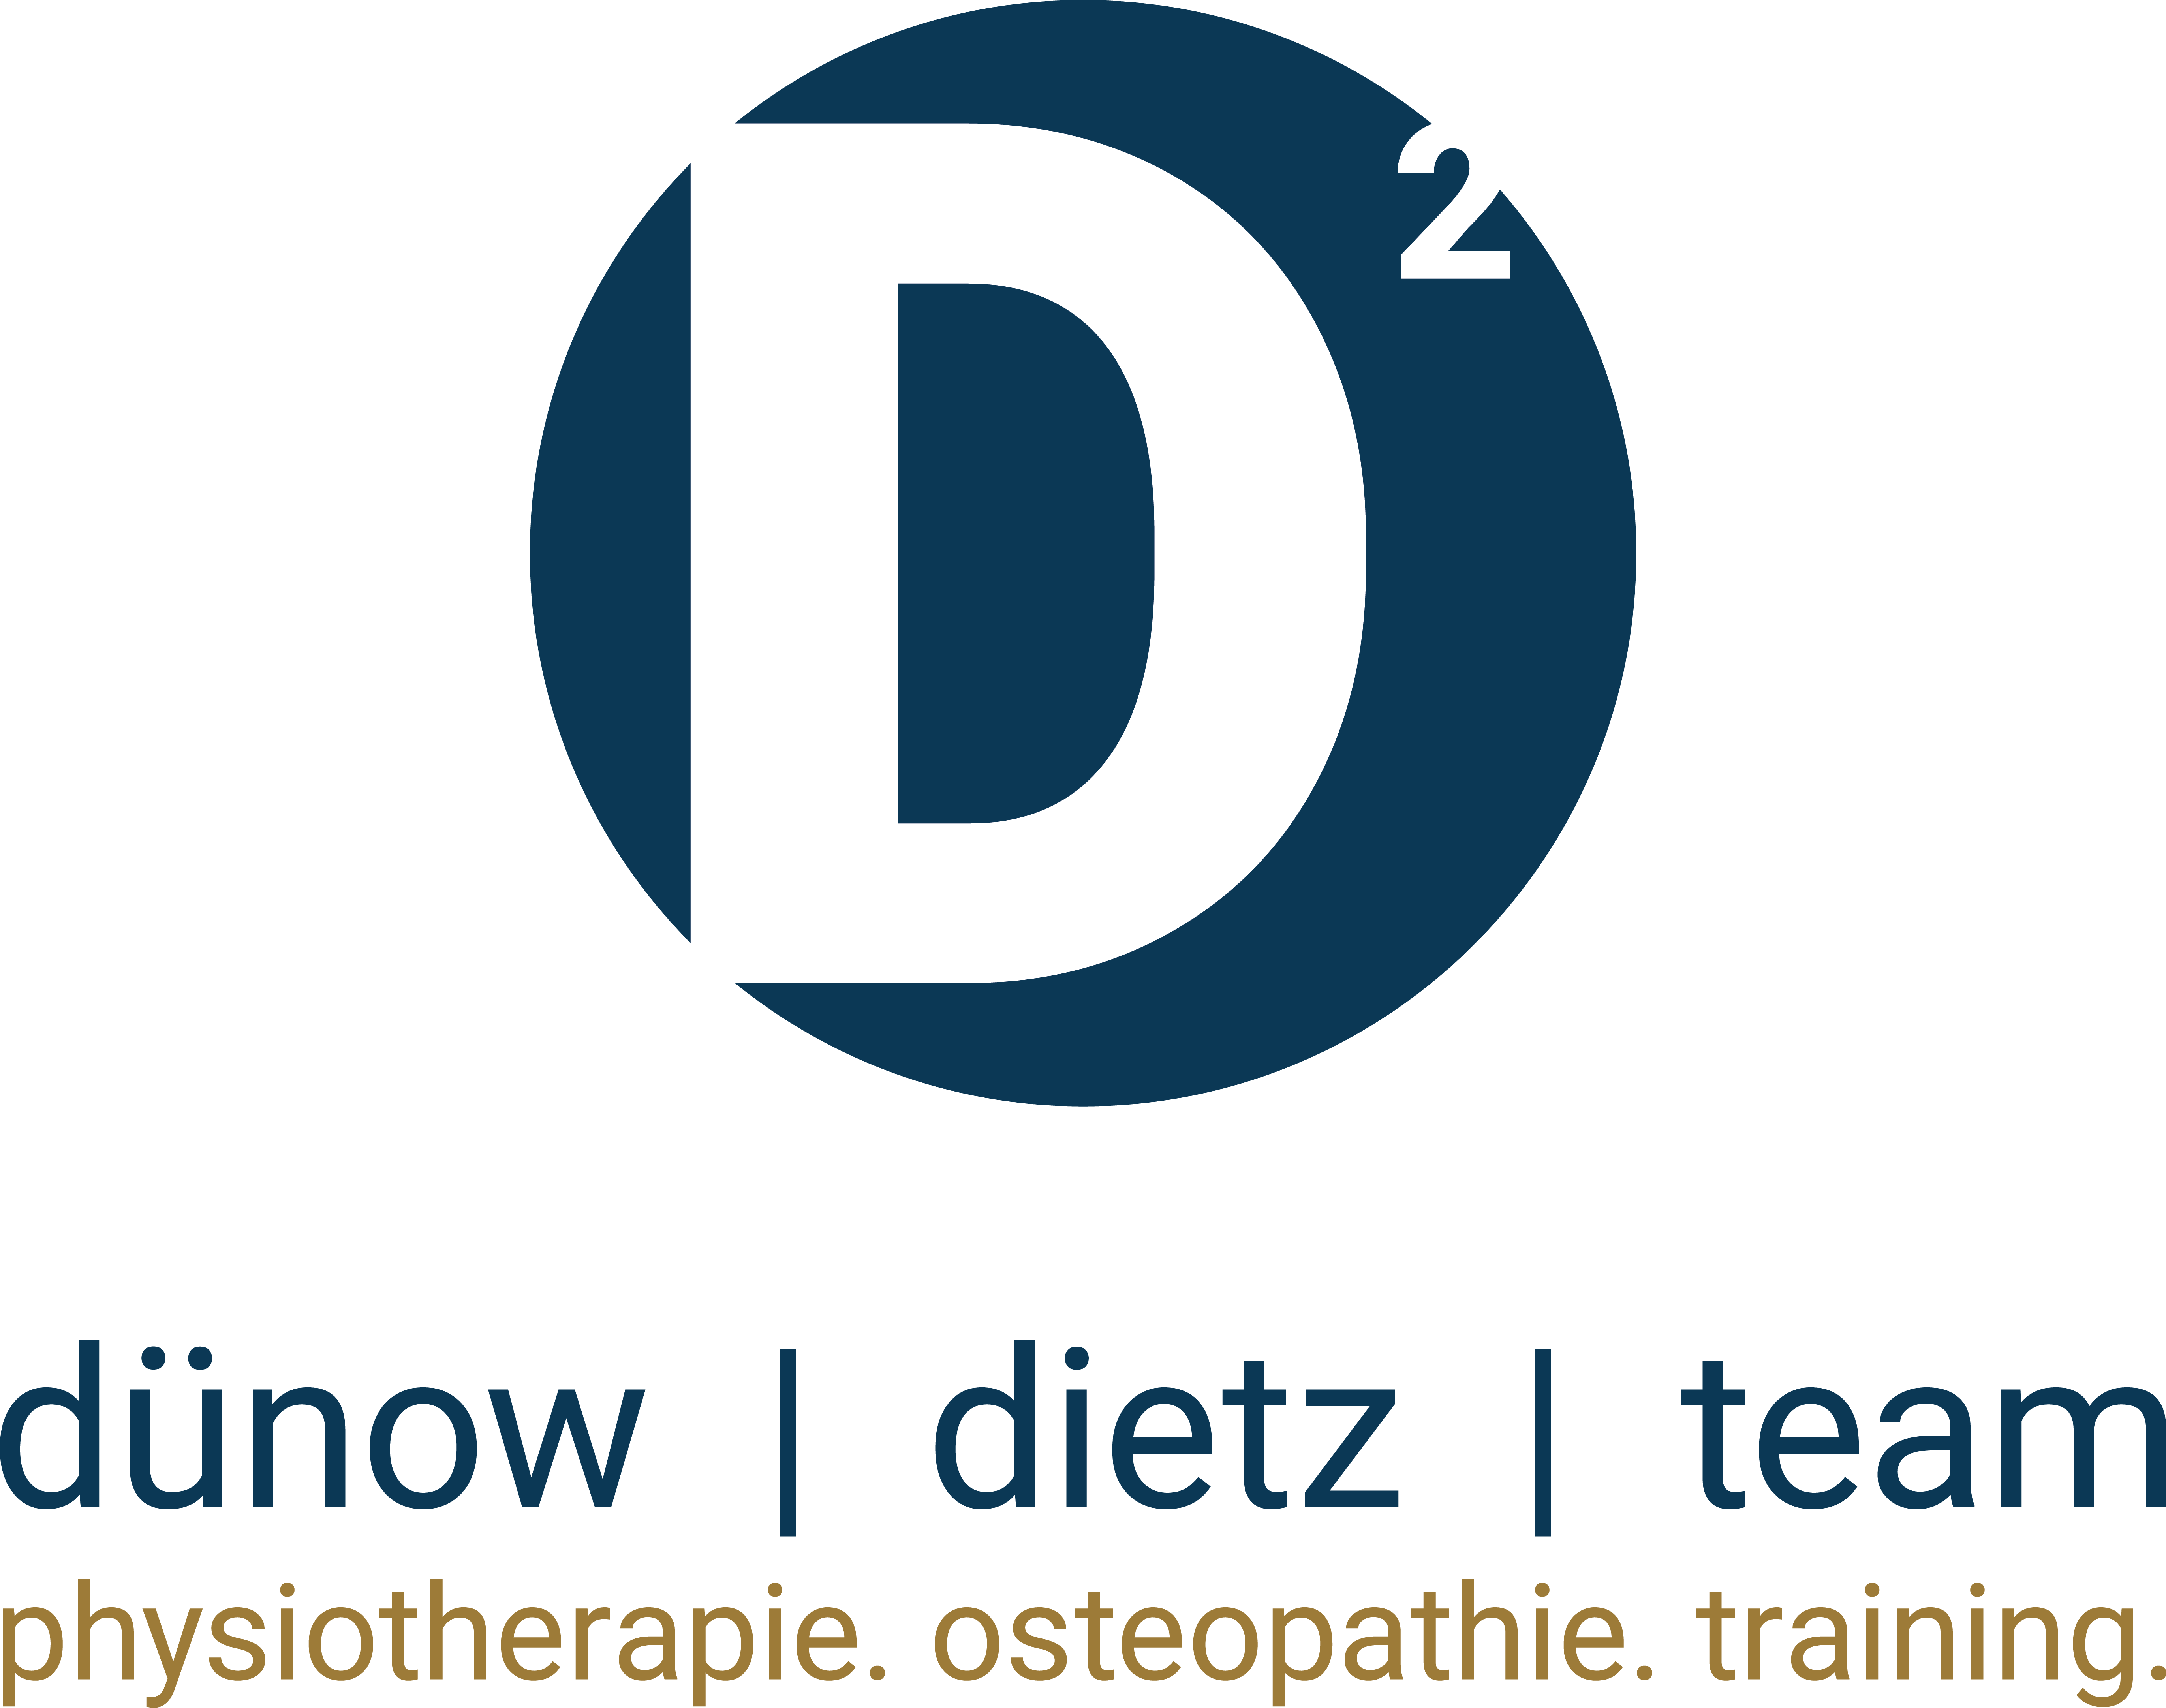 Logo D2 V1 neu 1 Christoph Dietz, Gesellschafter der physiotherapeutischen Praxis Dünow & Dietz GbR, Wiesbaden